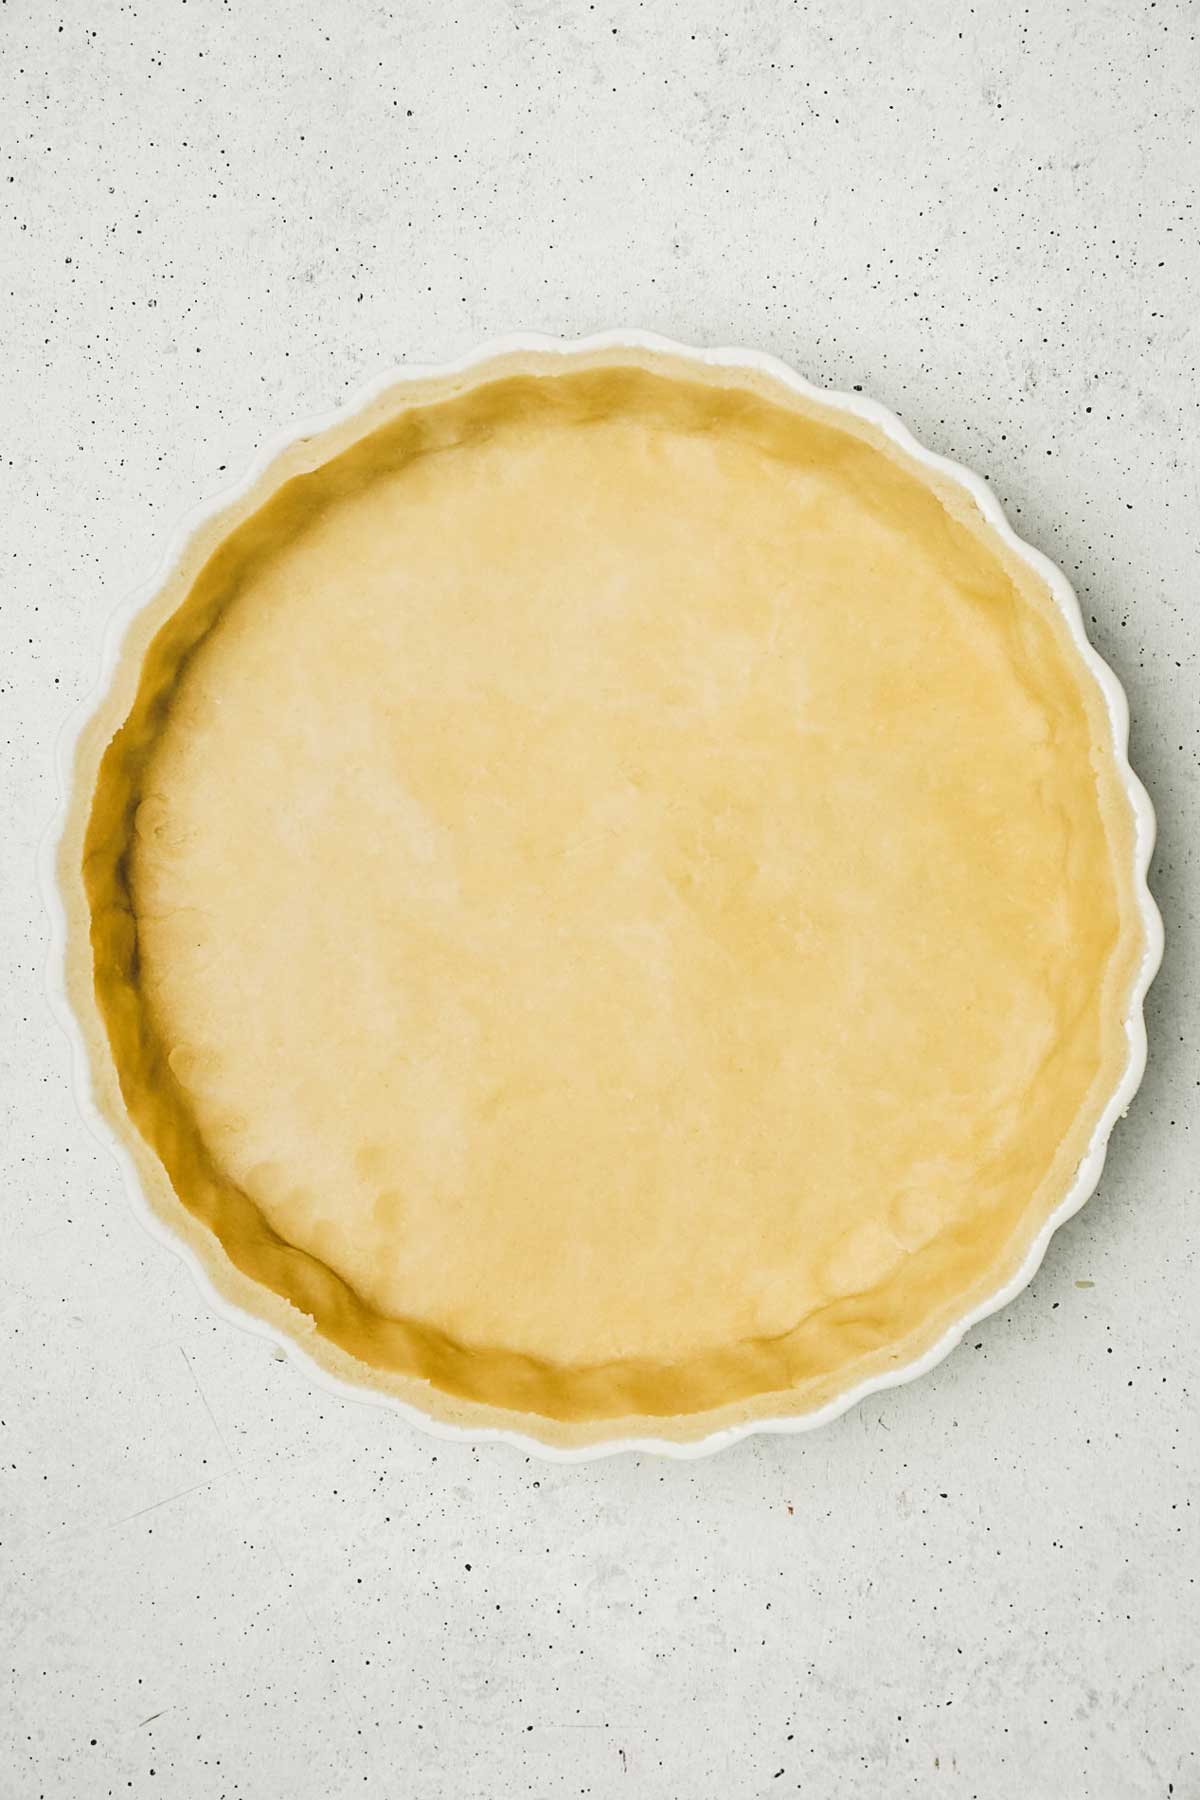 Pâte Brisée - A Classic French Pie Crust Recipe